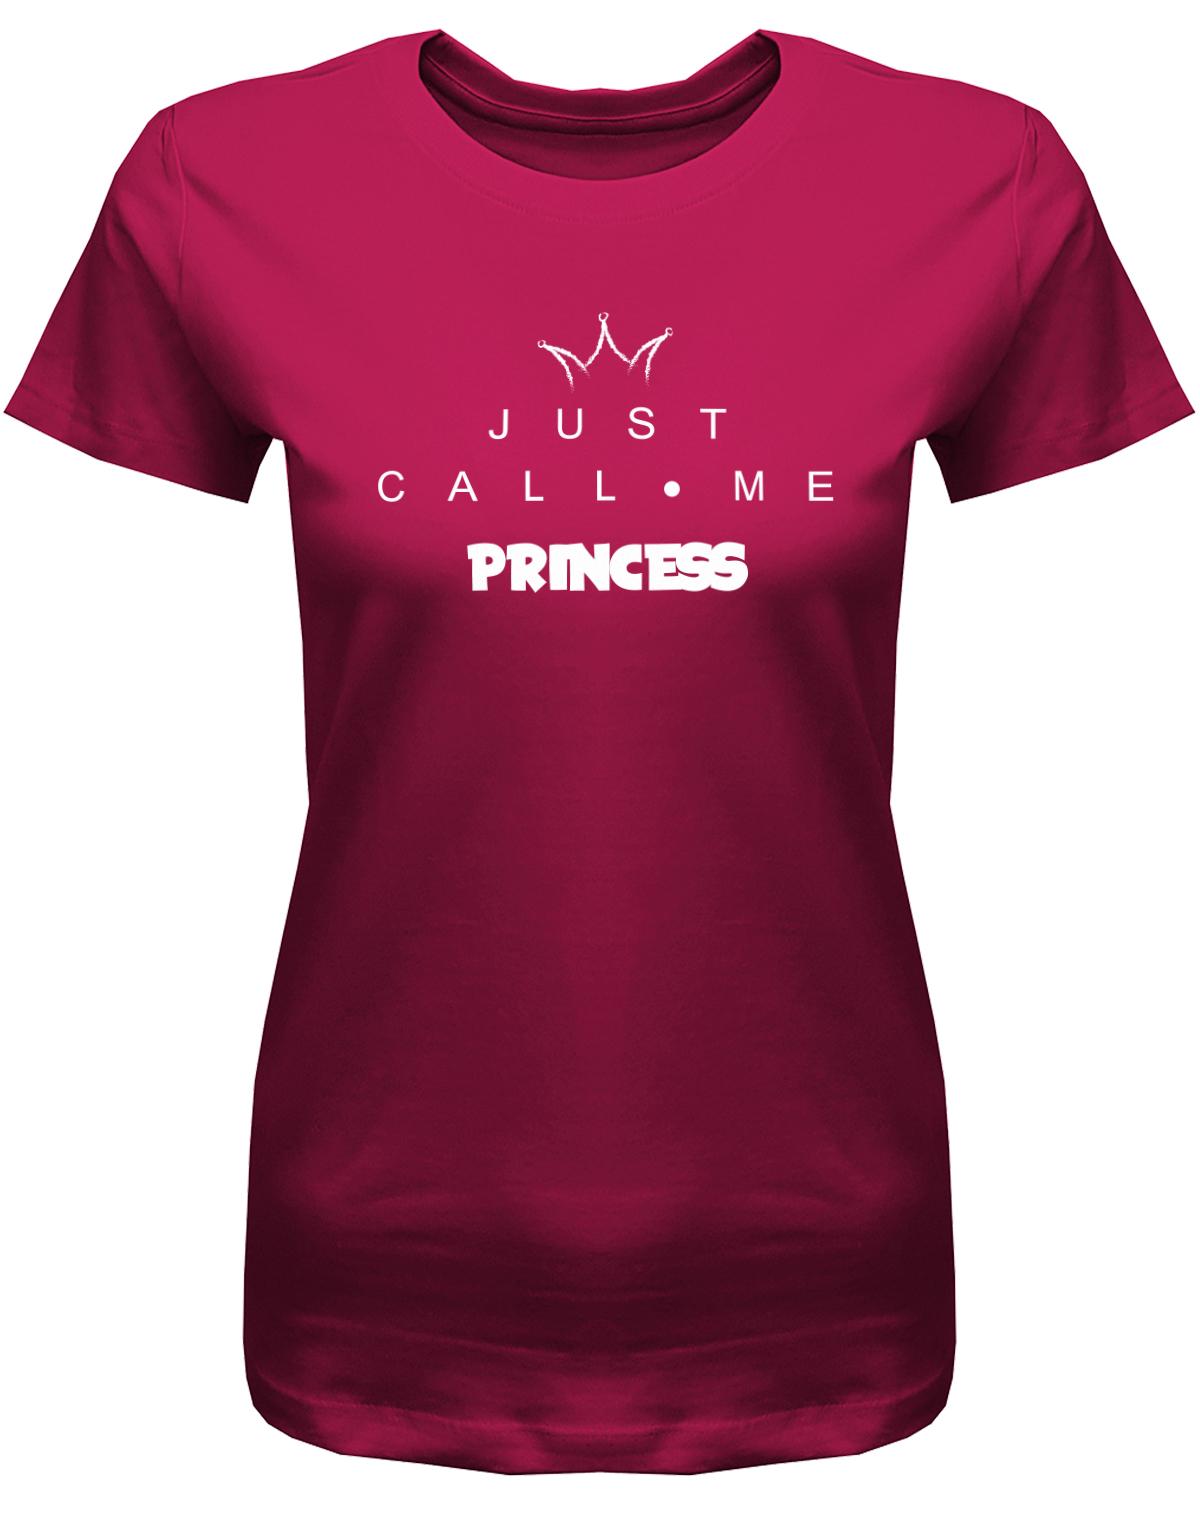 Just-call-me-Princess-Damen-Shirt-sorbet